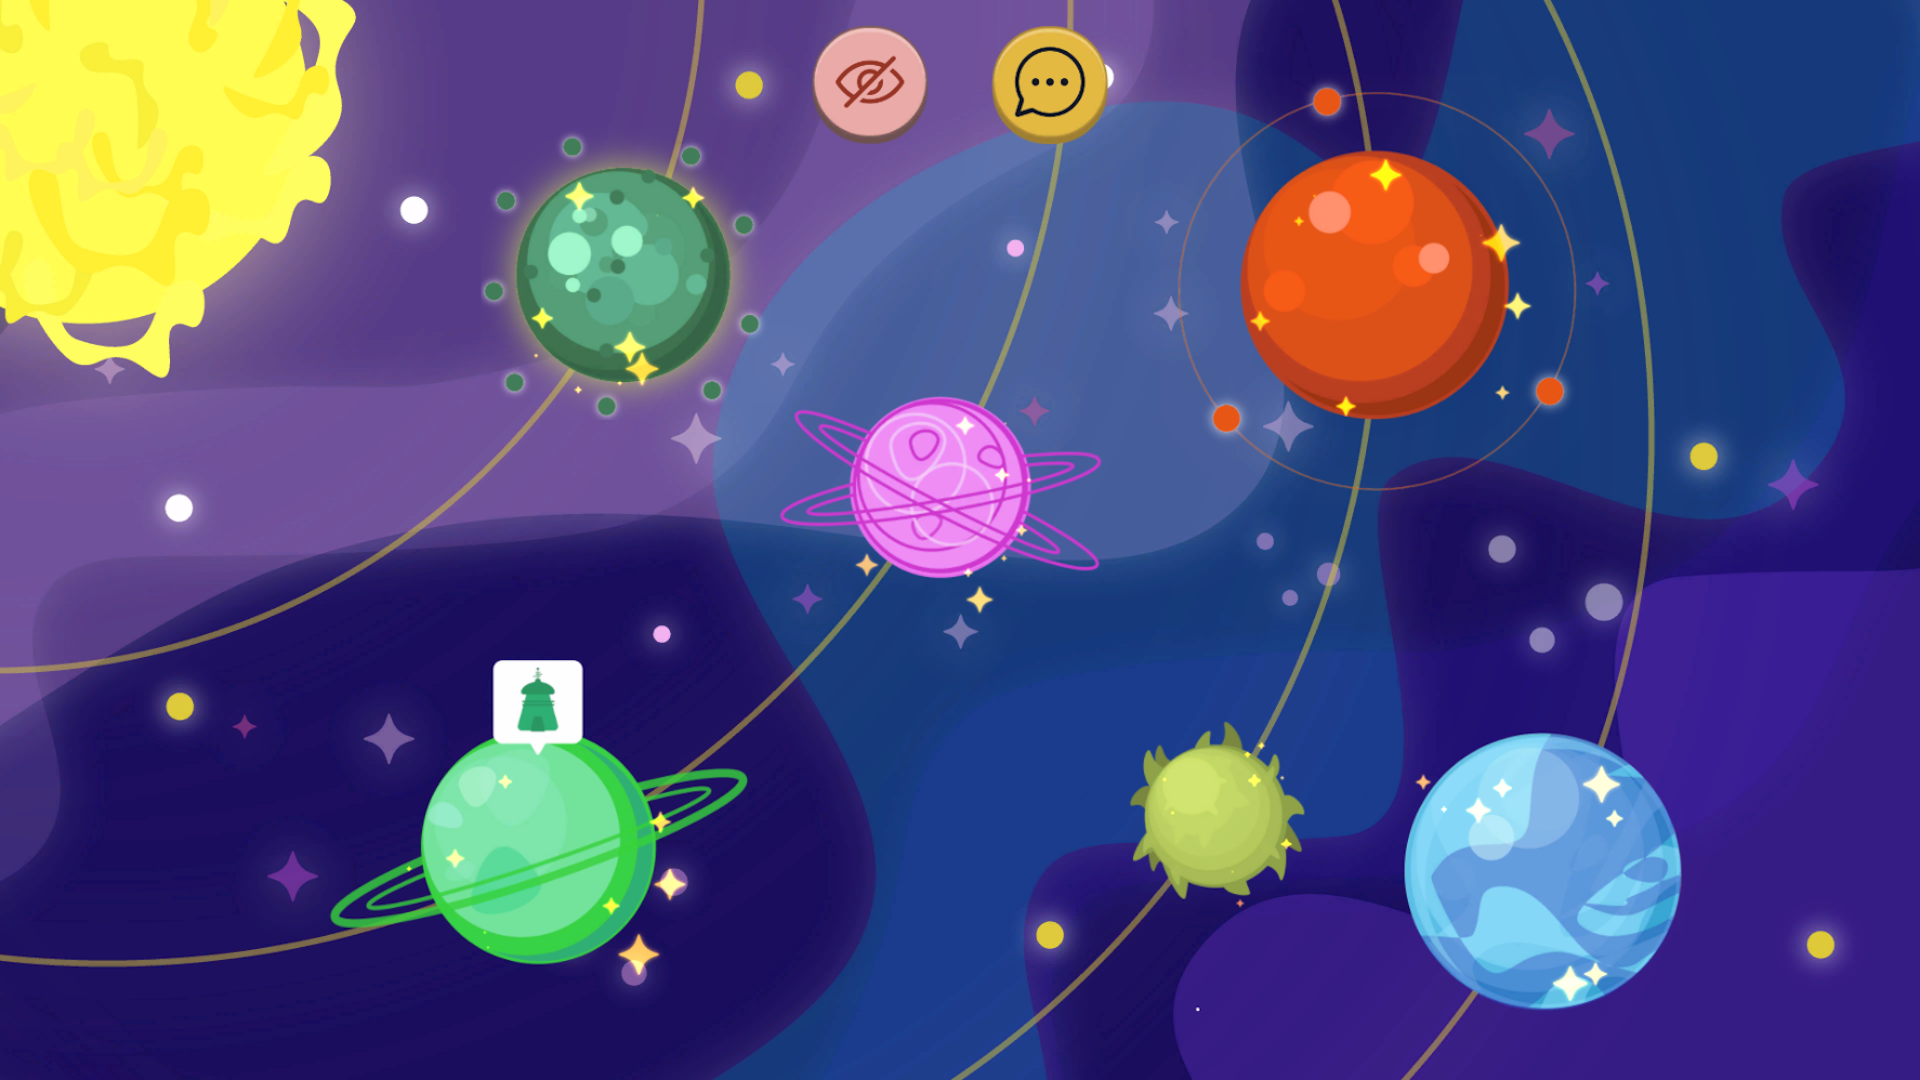 Bilden visar det fiktiva solsystemet Nati med sex stycken planeter i olika färger samt en stor gul sol. Rymden ses i bakgrunden med stjärnor och allt annat är lila blått.